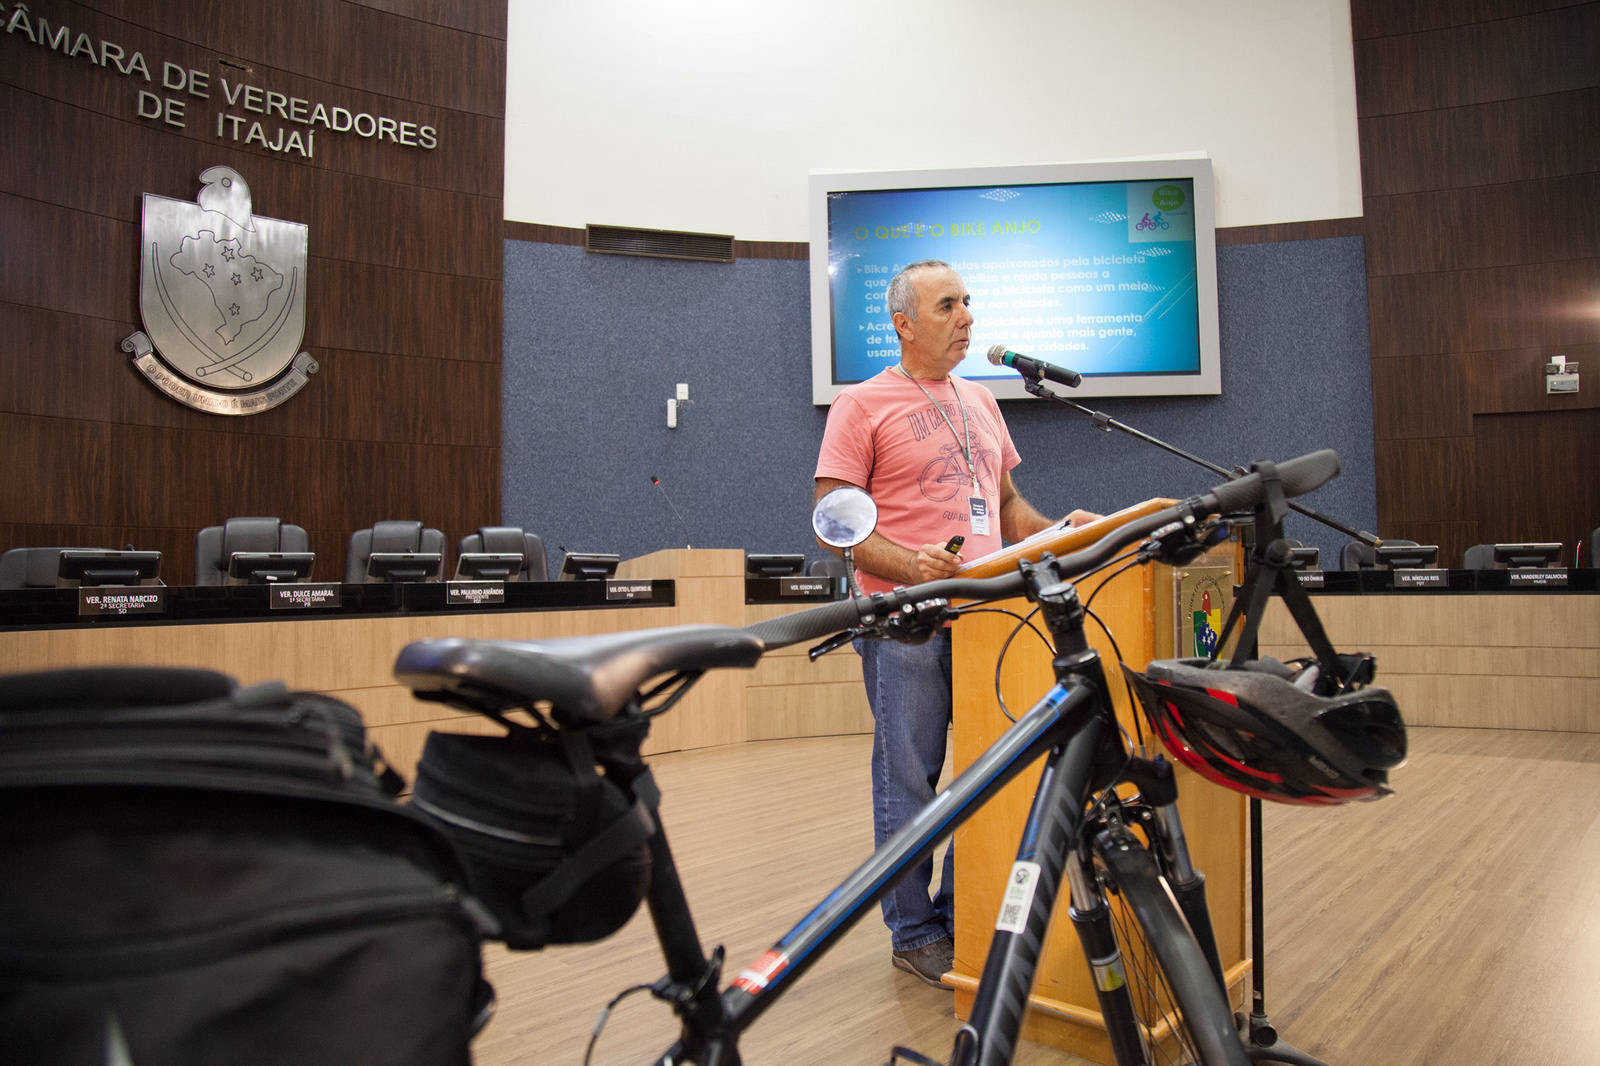 #PraCegoVer: a foto mostra o responsável
pelo Bike Anjo de Itajaí, Jorge Andriani, durante
a palestra no Plenário da Câmara de Itajaí.